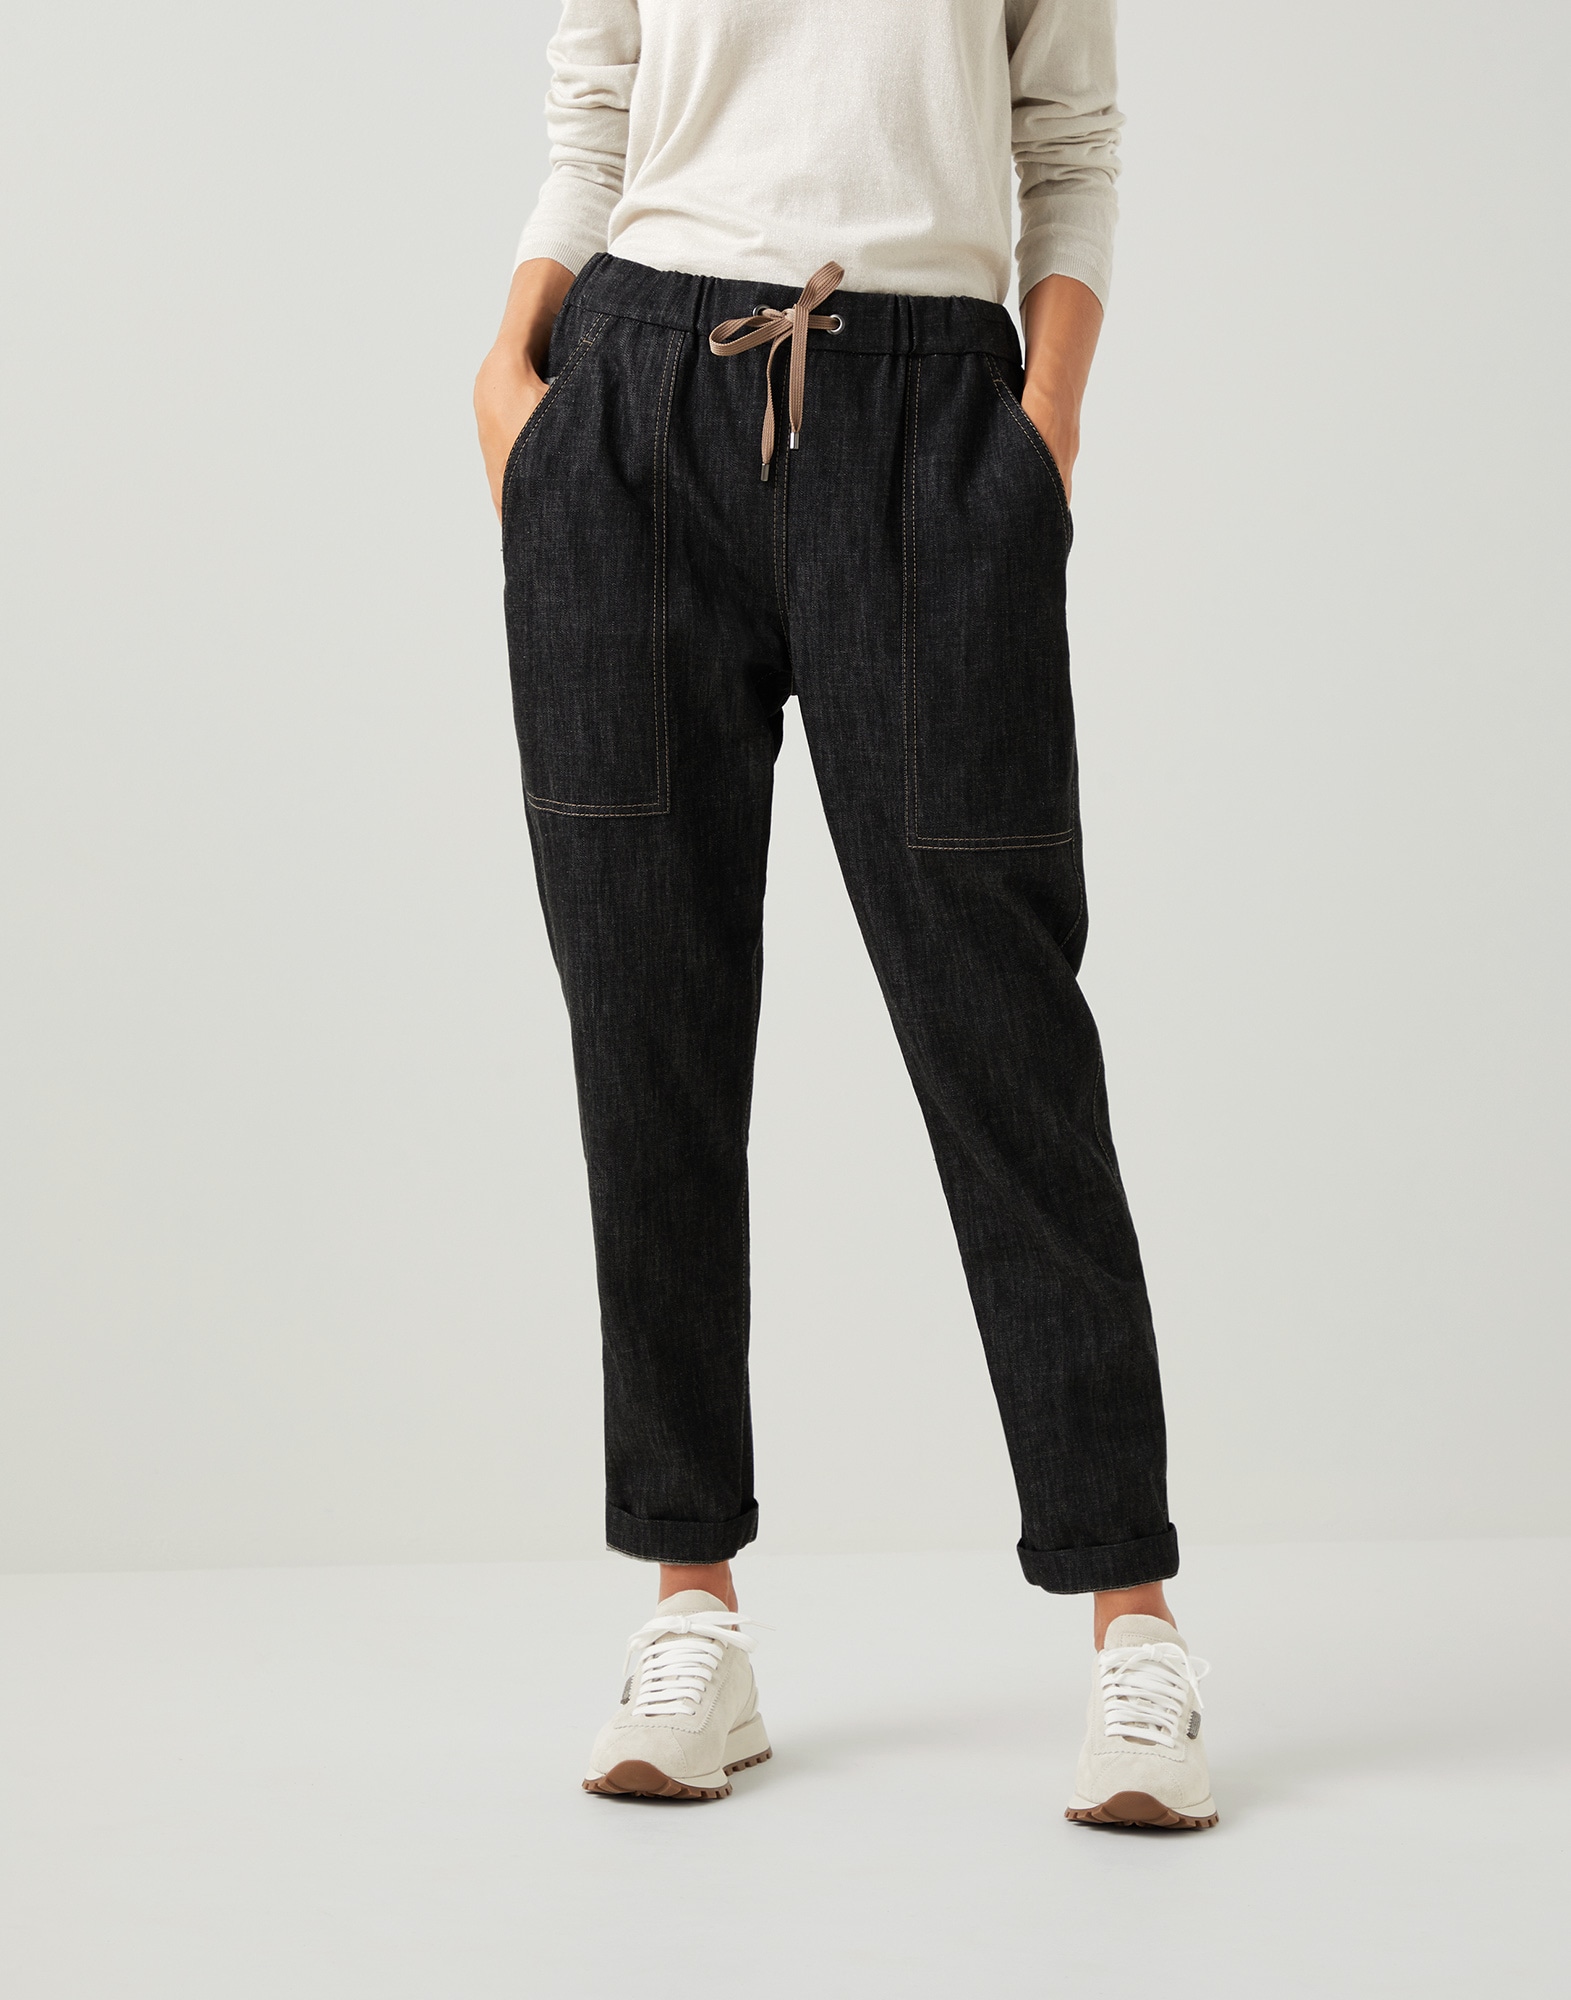 Women's jeans - Designer denim collection | Brunello Cucinelli